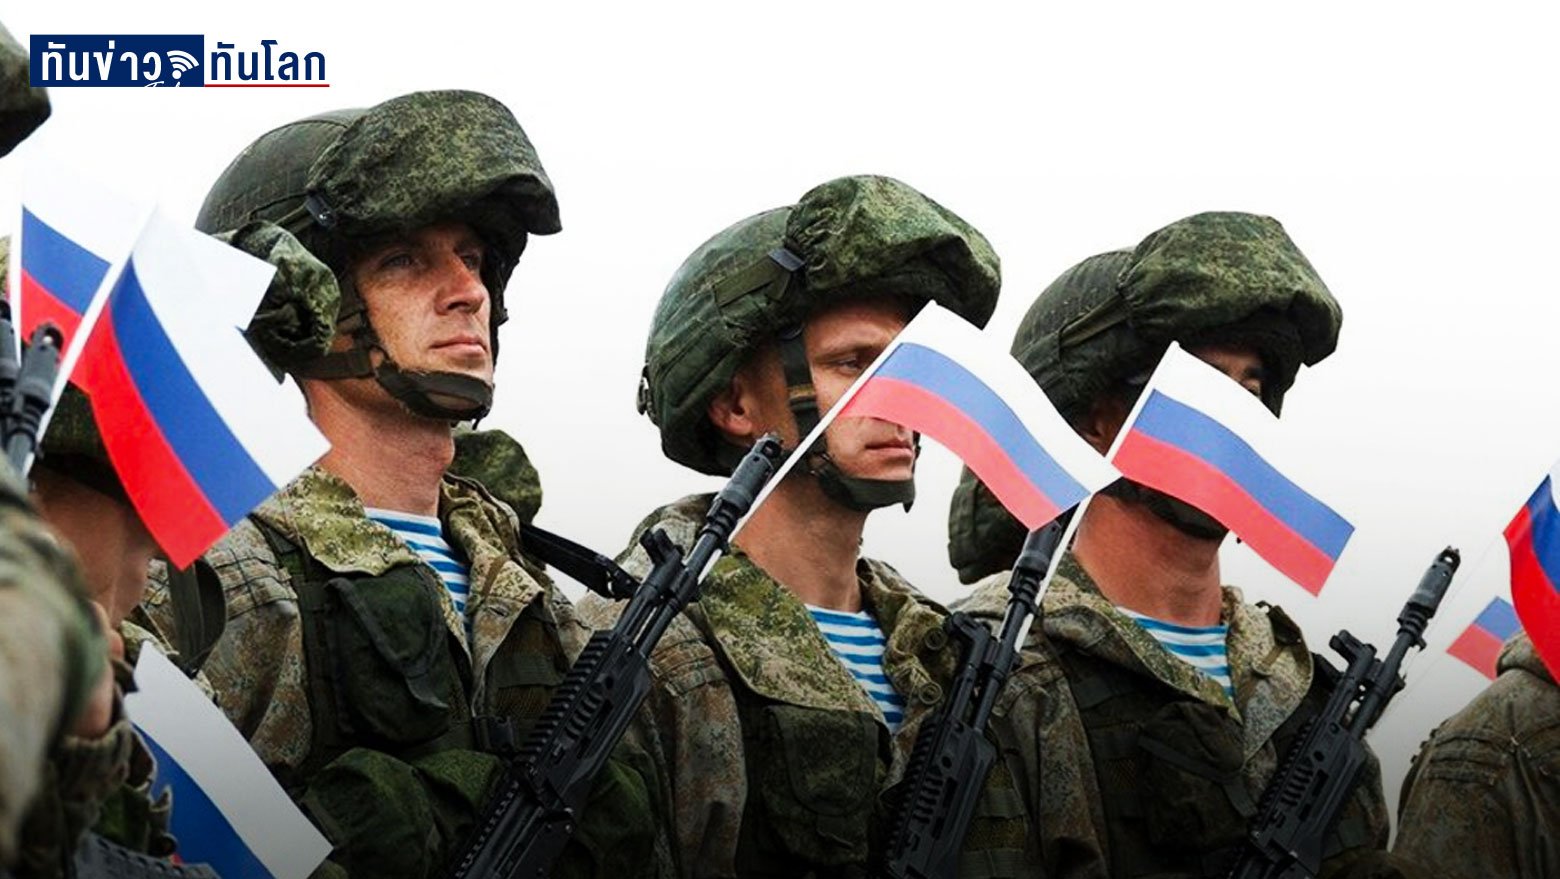 เจาะ 5 ทางออกวิกฤตยูเครน หากไม่อยากเห็นสงครามกับรัสเซียปะทุ